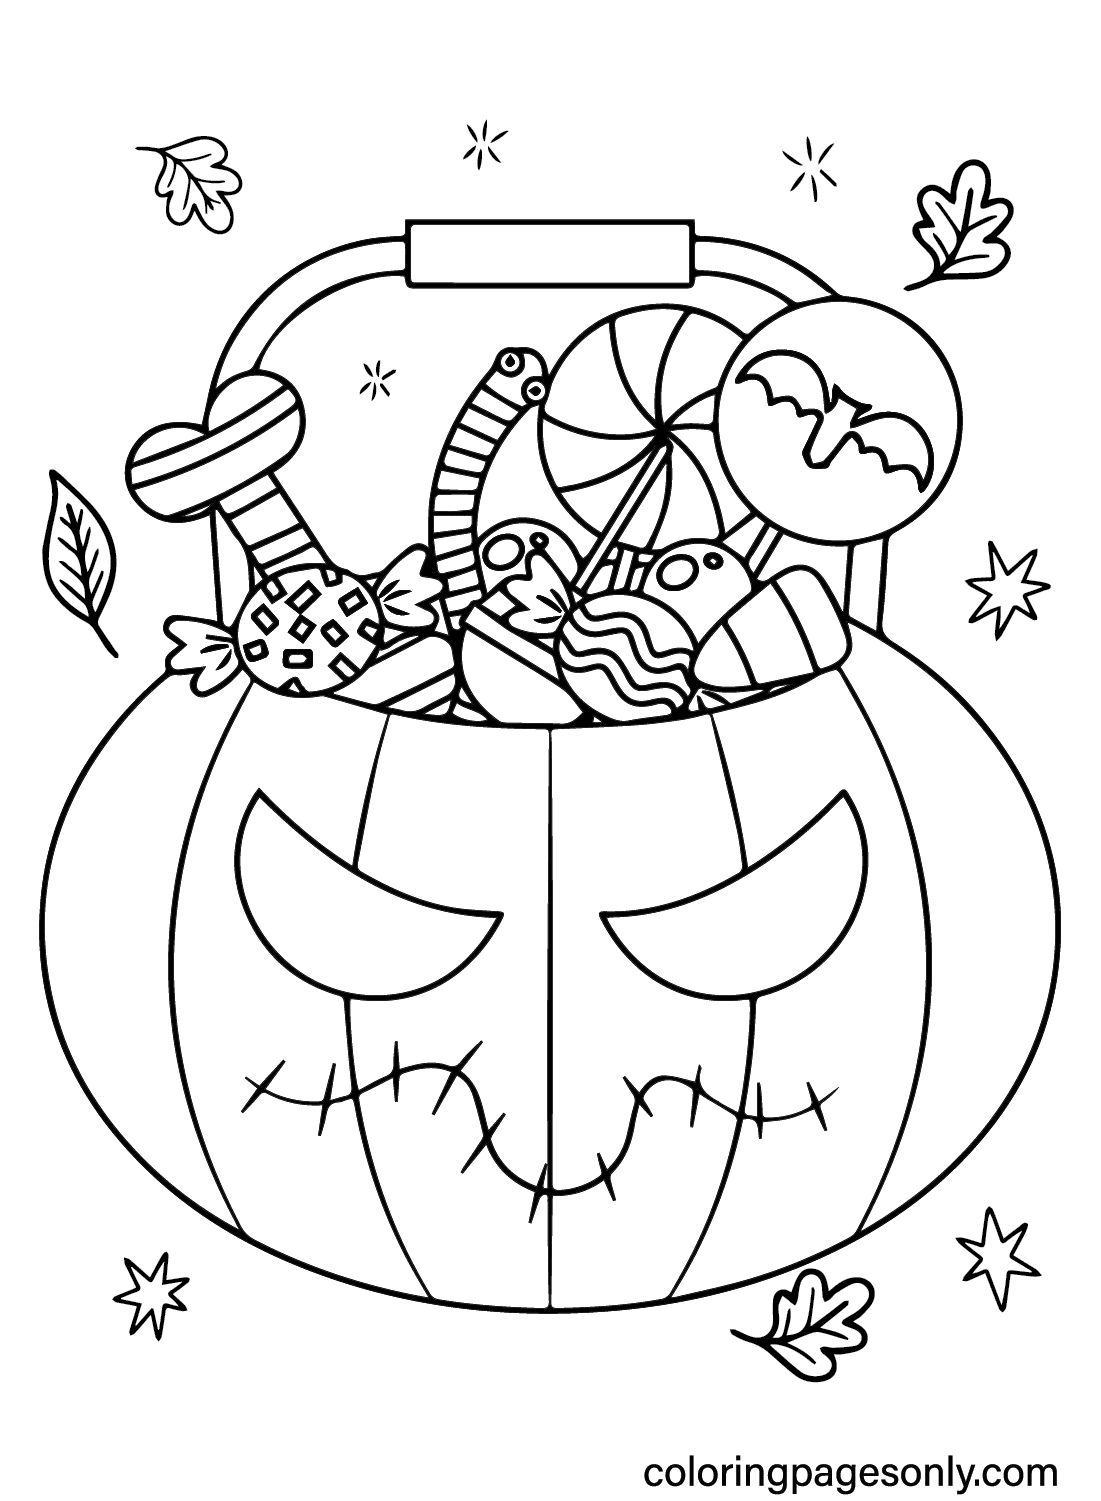 Página para colorear de dulces de Halloween para imprimir desde Dulces de Halloween